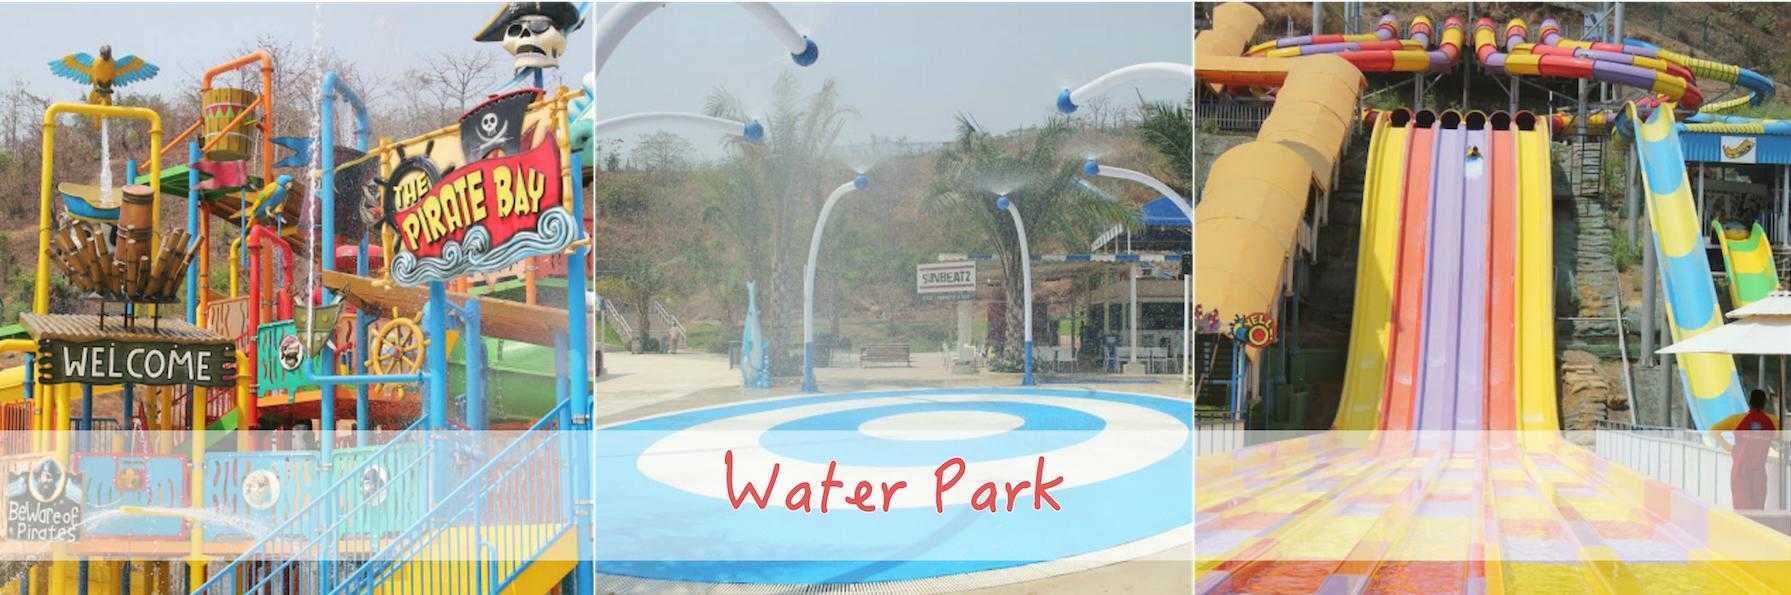 imagica-water-park-mumbai.jpg